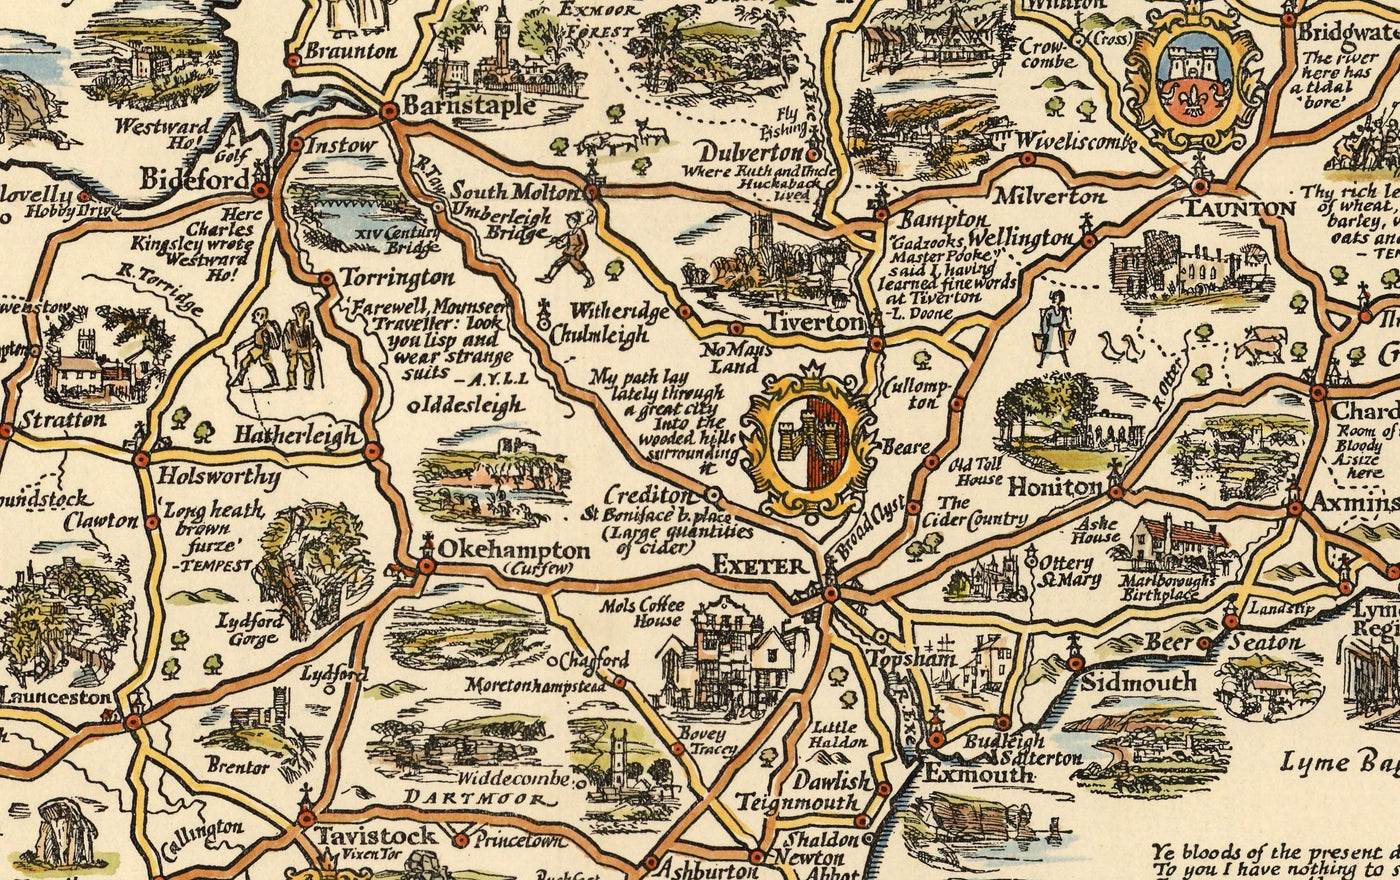 Pratts Plan des Westlandes, 1932 von A.E. Taylor - Somerset, Dorset, Devon, Cornwall - alte Oldtimer-Karte - Esso, Standardöl